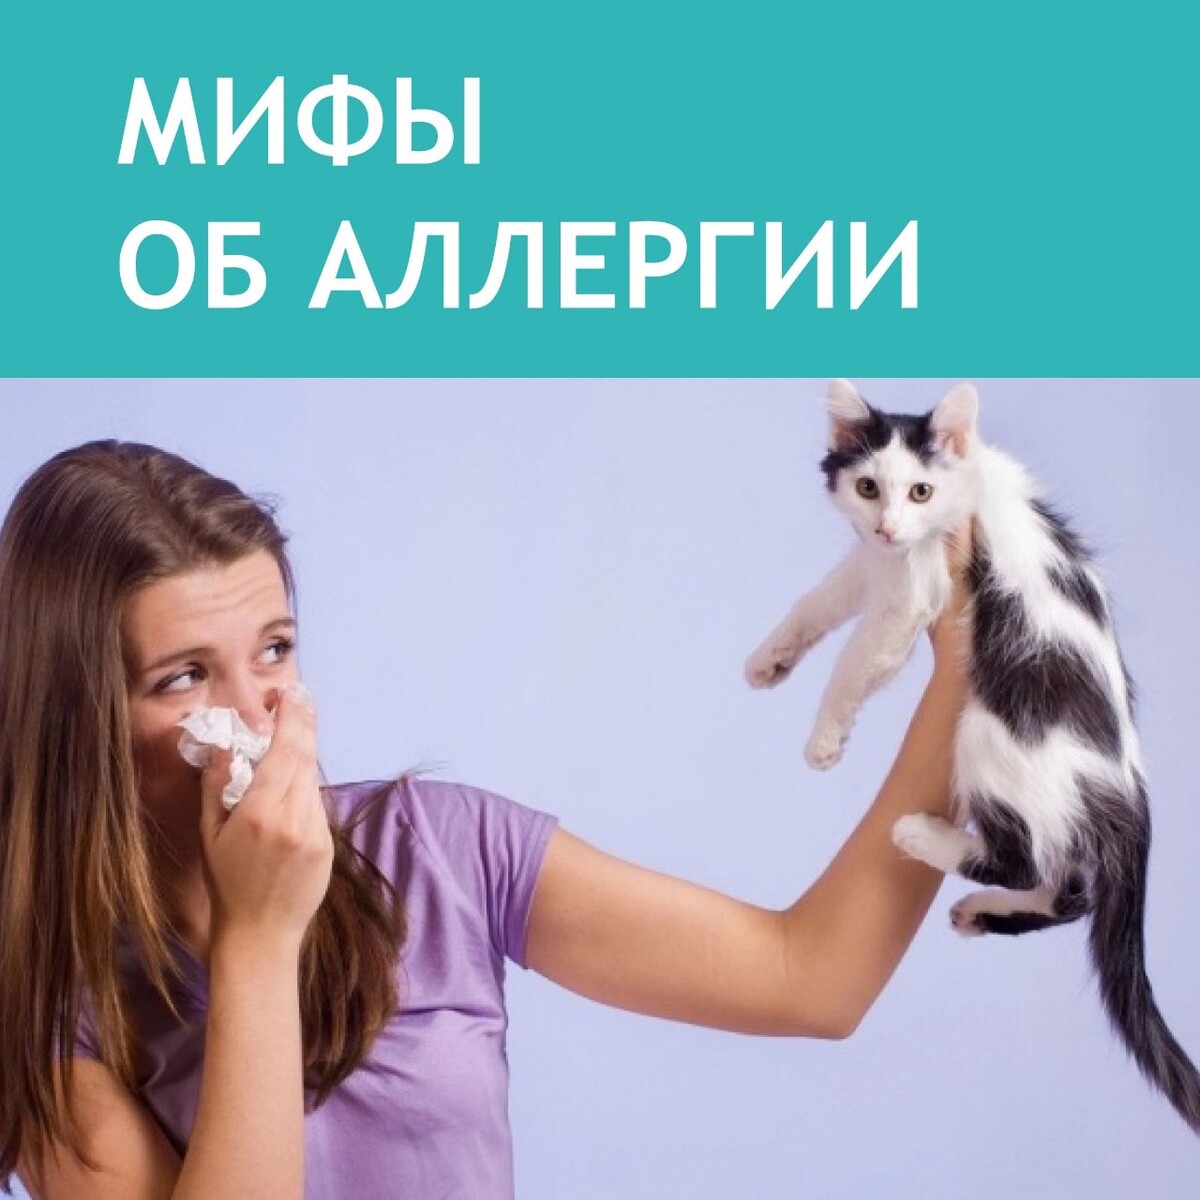 аллергия на животных фото детей